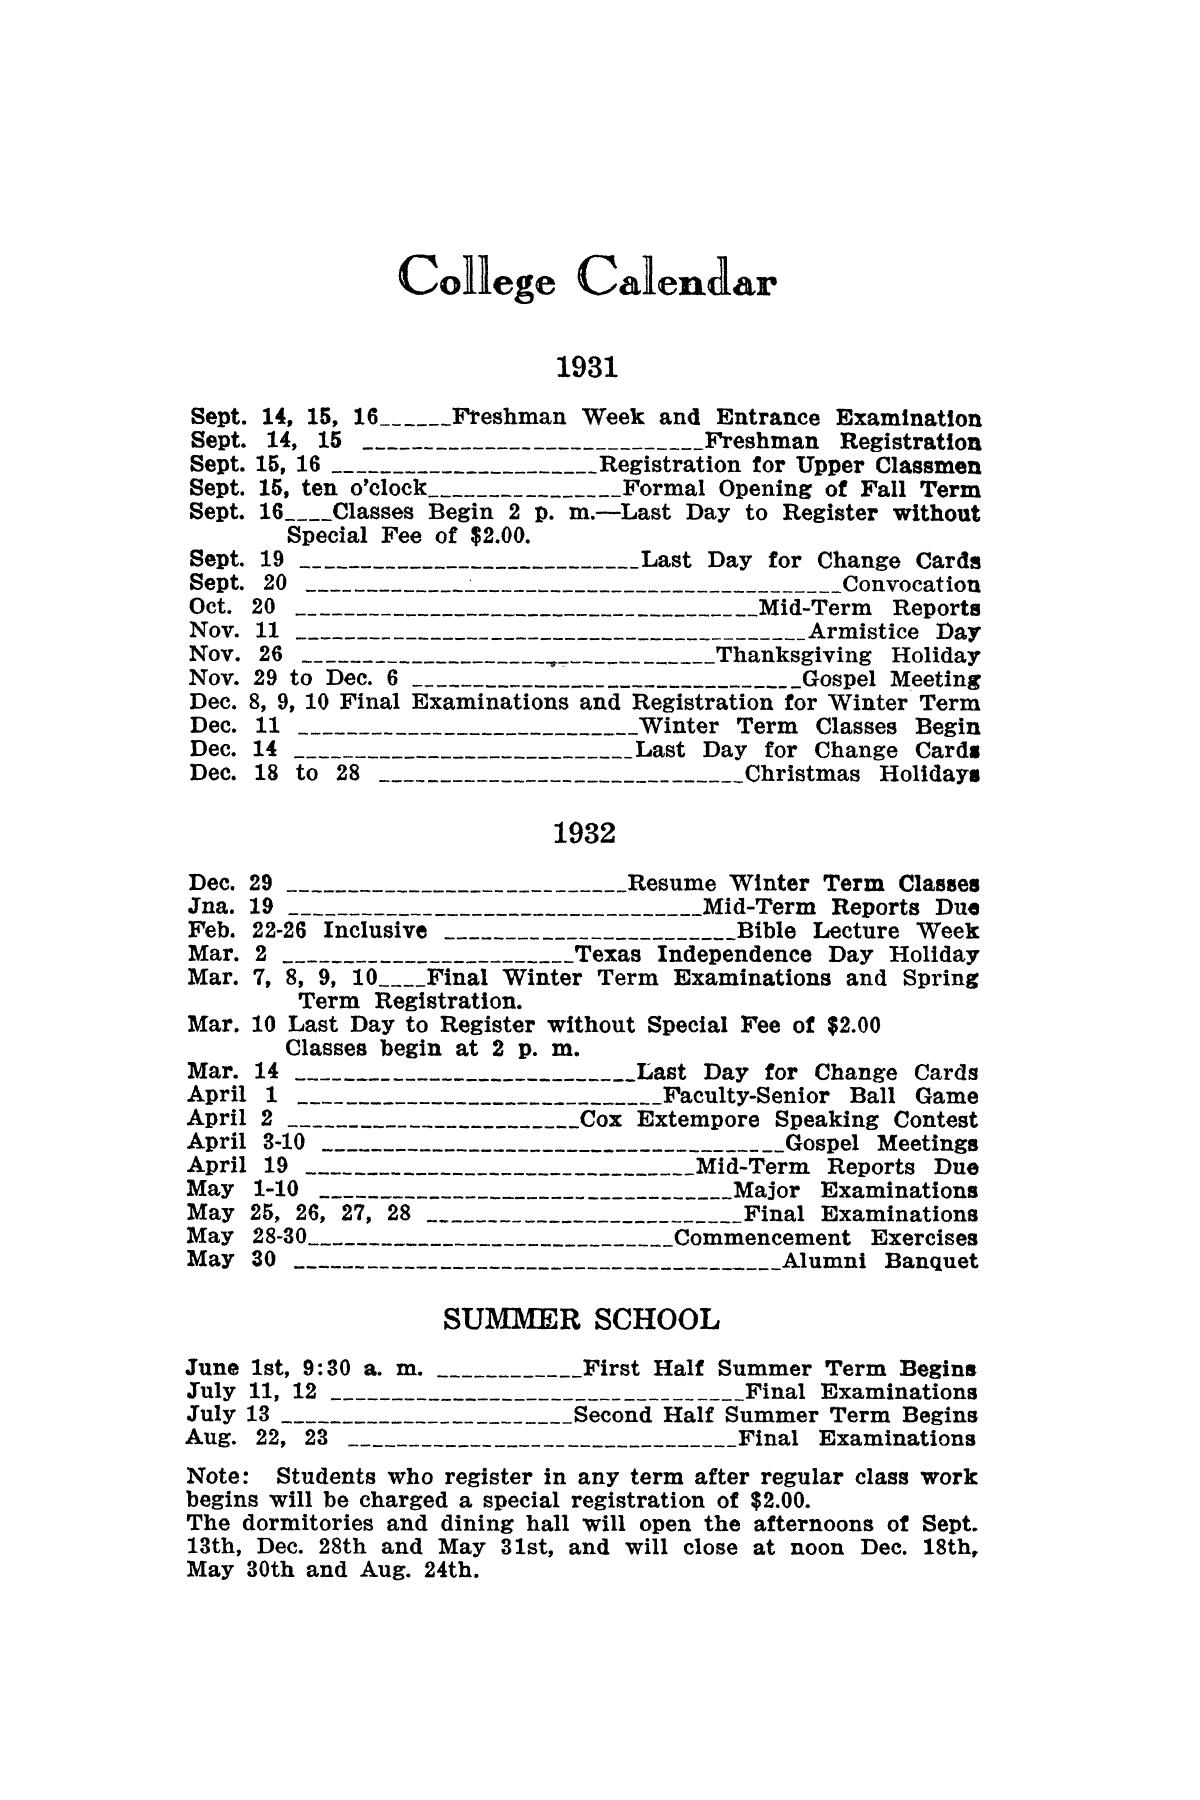 Catalog of Abilene Christian College, 1931-1932
                                                
                                                    2
                                                